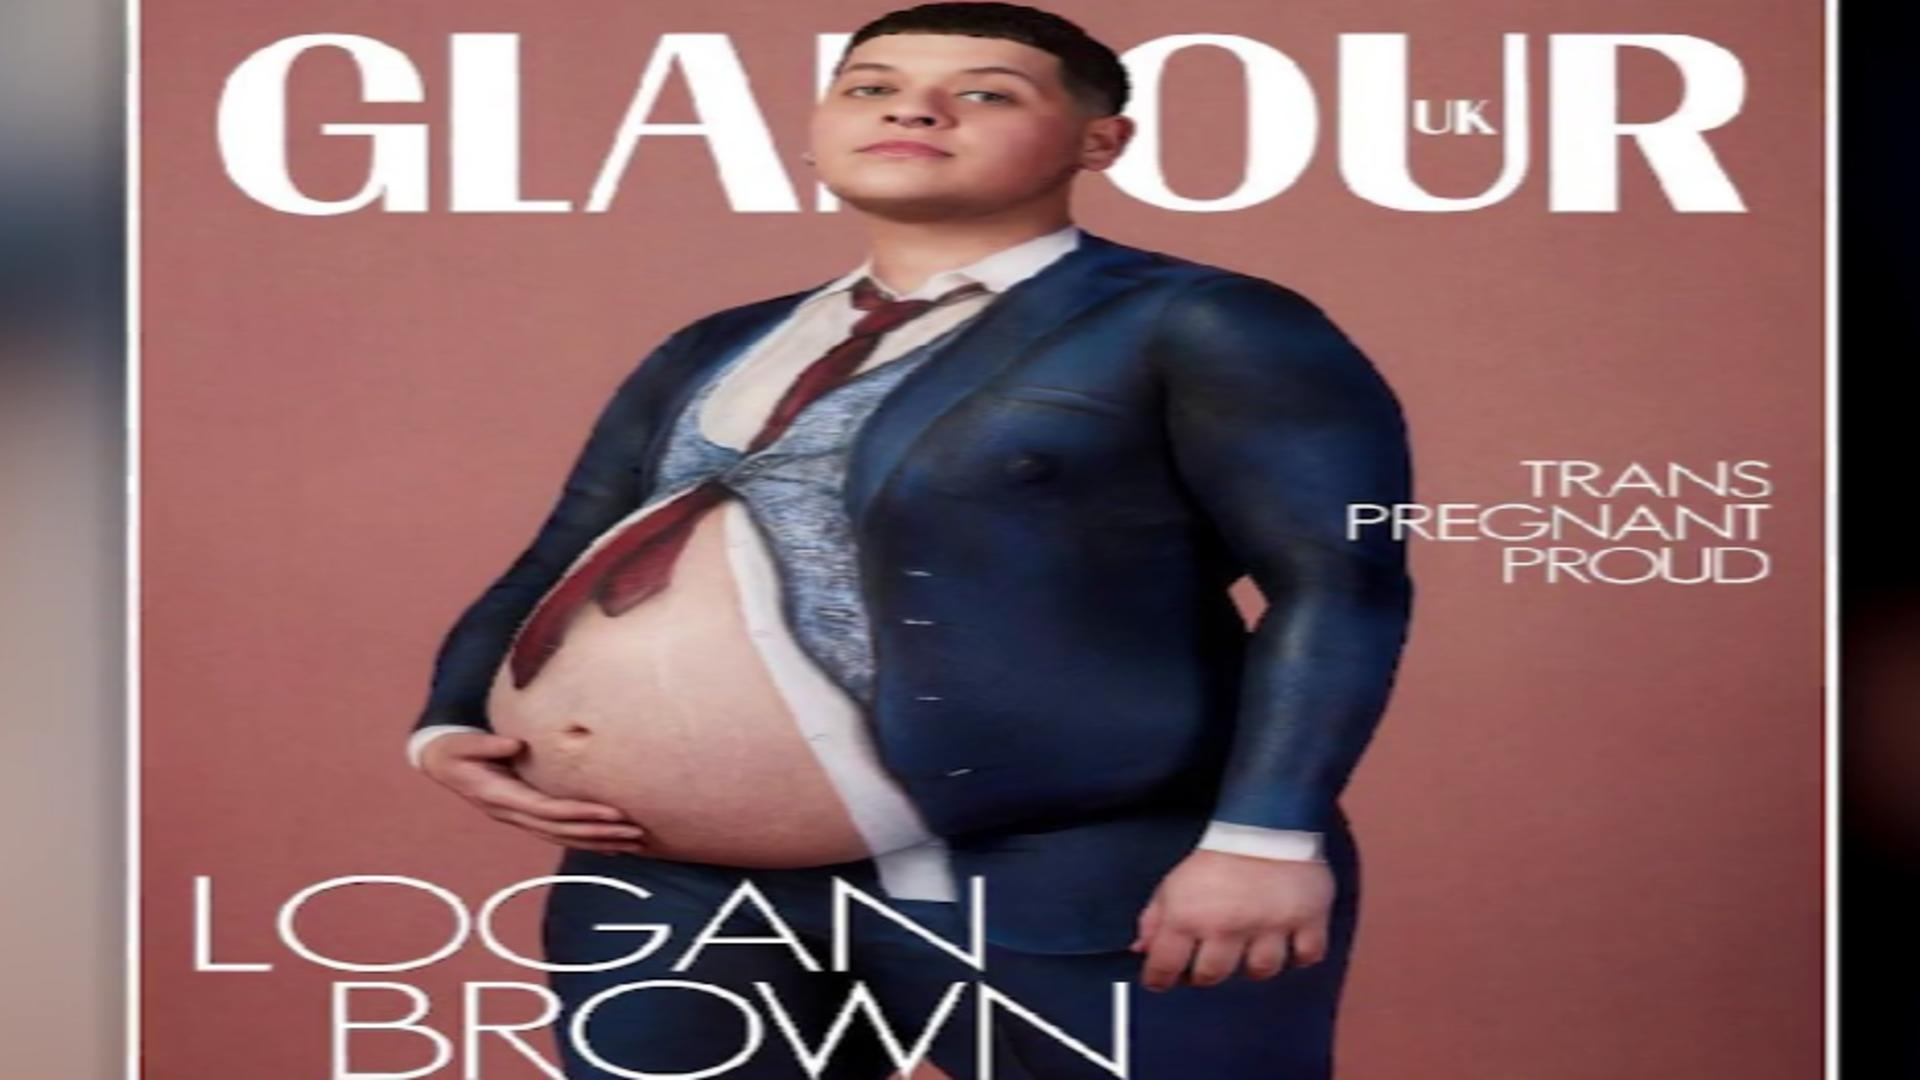 Bărbat însărcinat, pe coperta unei reviste britanice extrem de populare. Apariție controversată